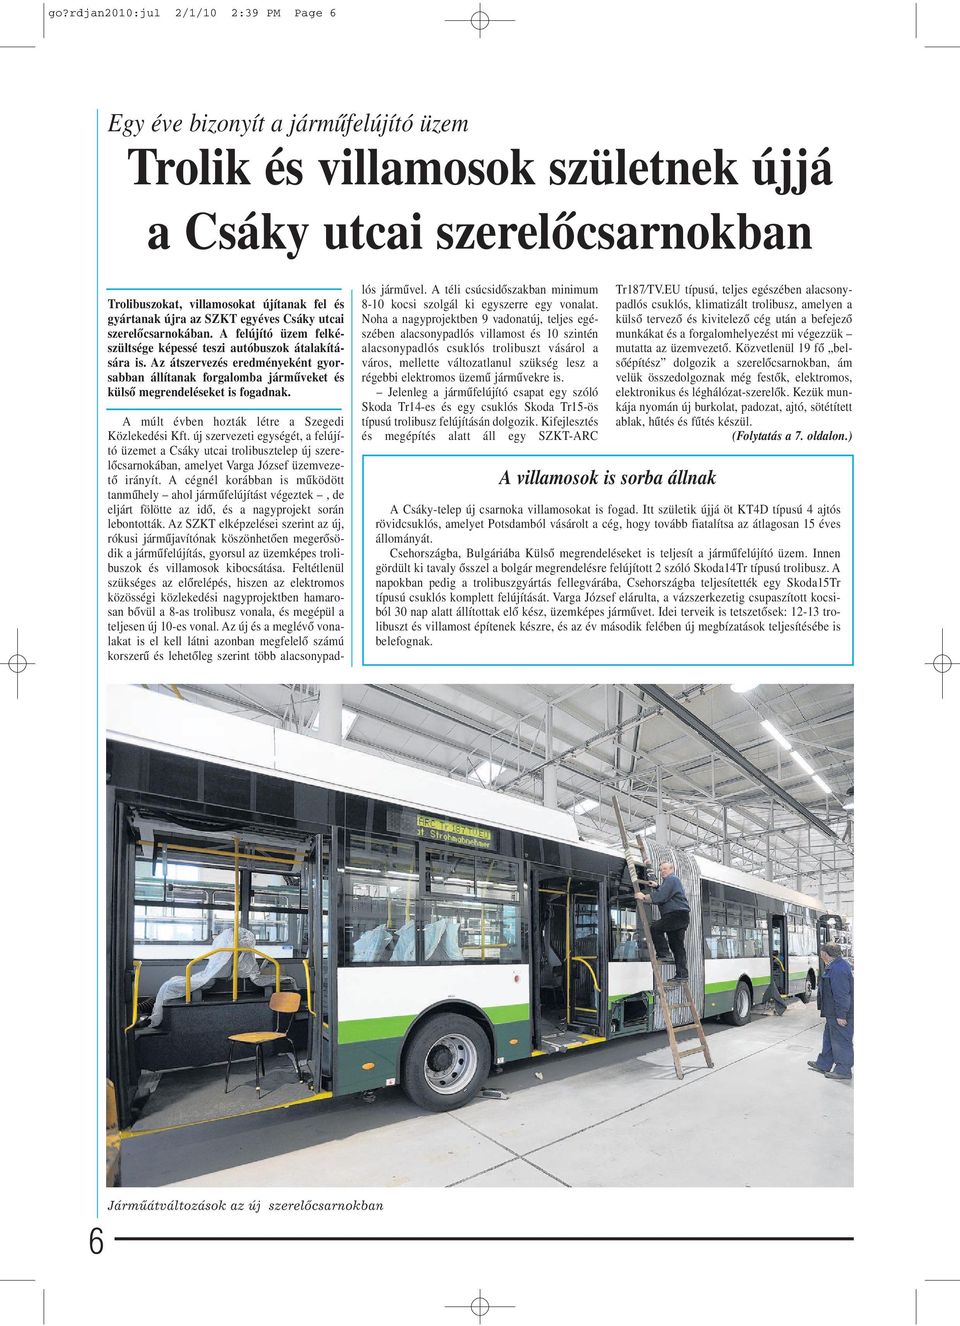 Az átszervezés eredményeként gyorsabban állítanak forgalomba jármûveket és külsô megrendeléseket is fogadnak. A múlt évben hozták létre a Szegedi Közlekedési Kft.